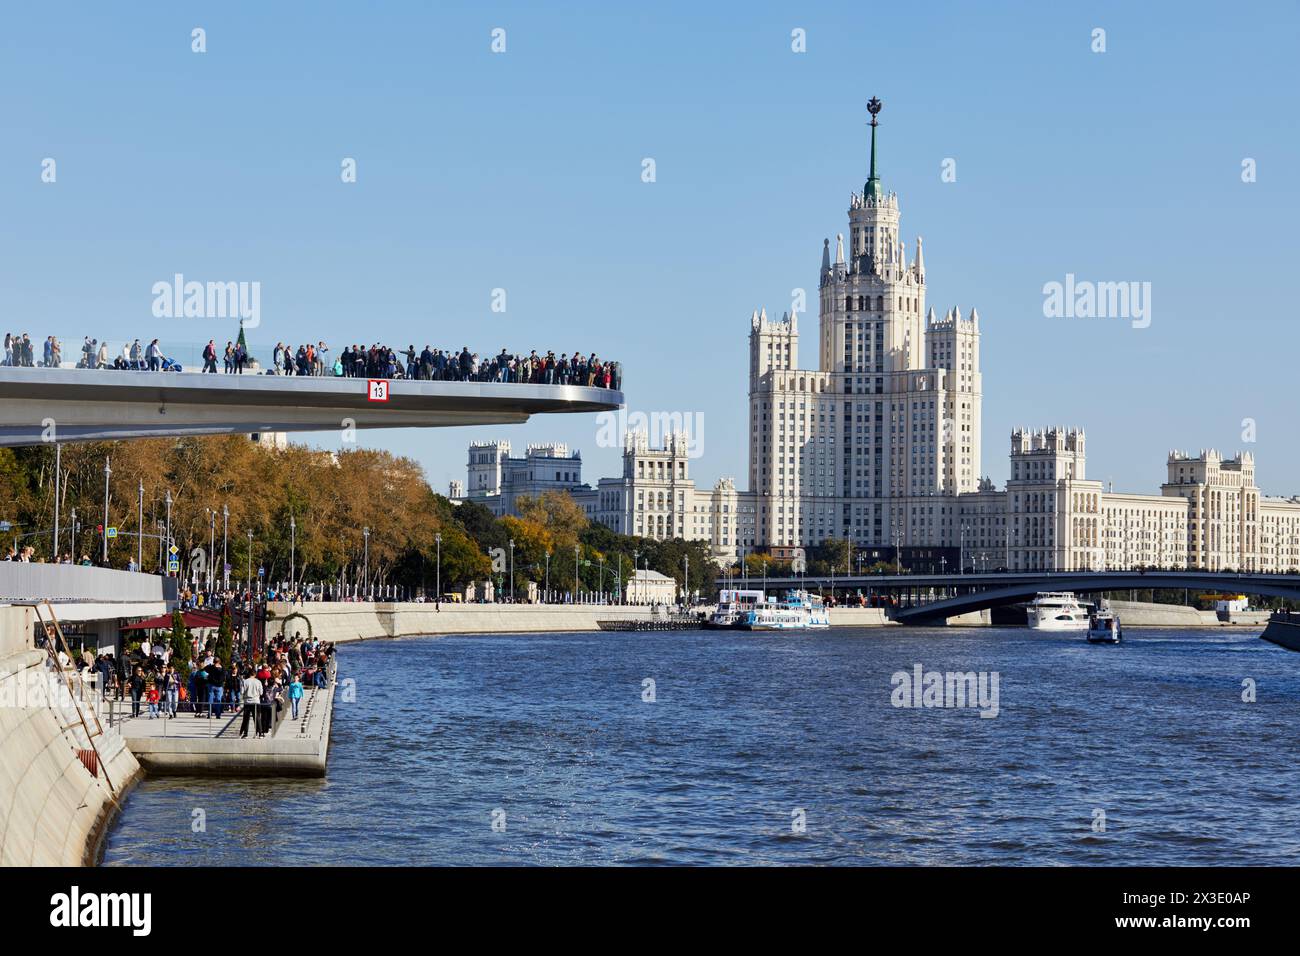 MOSCA, RUSSIA - 24 settembre 2017: Argine Moskvoretskaya, ponte galleggiante sopra il fiume Moskva, torre Kotelnicheskaya, barche sul fiume Moskva. Kotelniche Foto Stock